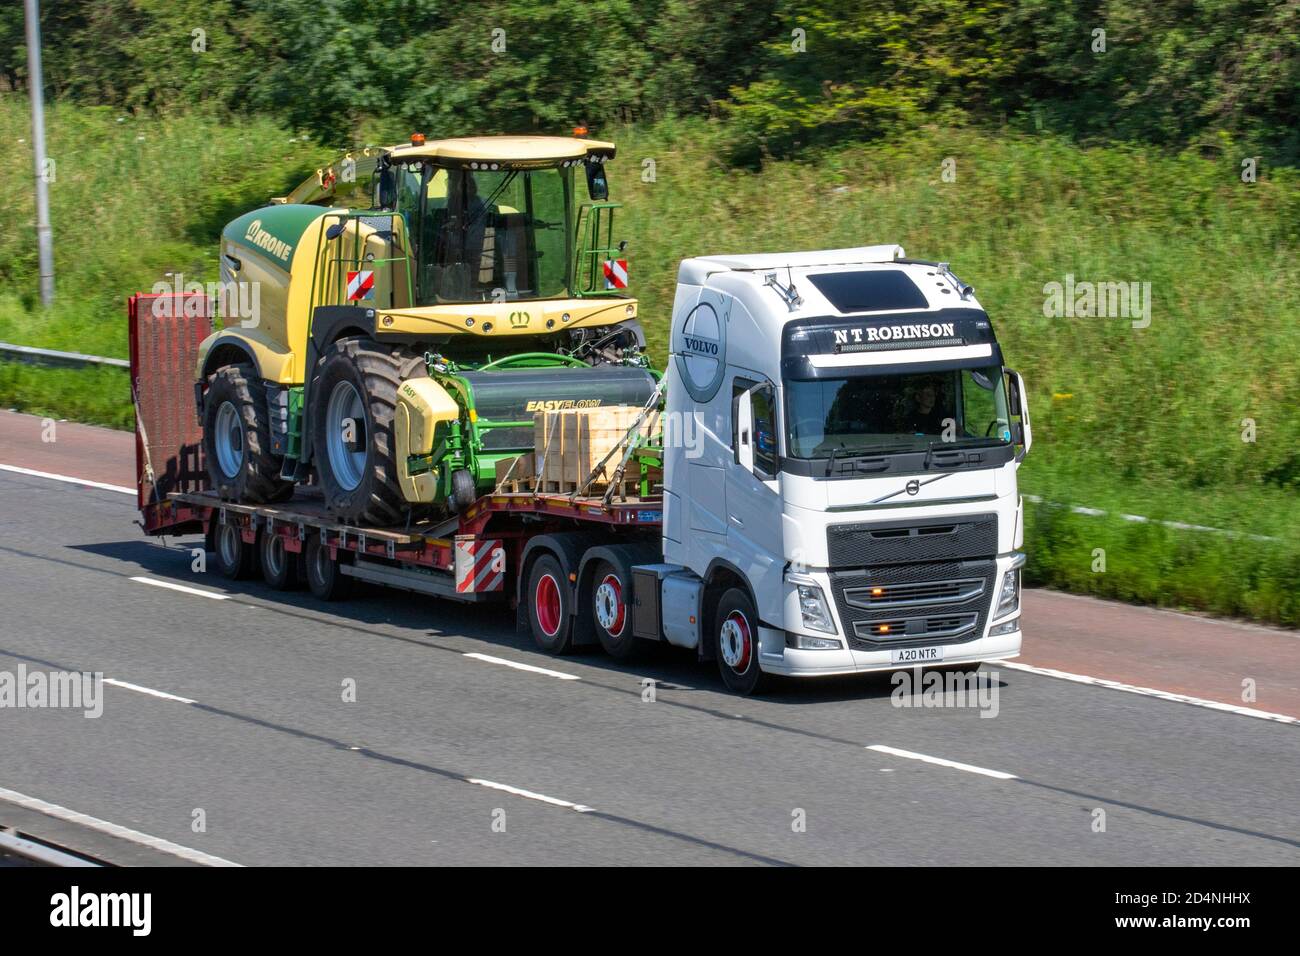 N T Robinson conduite de camions Volvo, routes du Royaume-Uni, véhicules plus lourds (LHV), prolongateur Kässbohrer Lowloader 3 Axle transportant des équipements agricoles Krone easyflow. Banque D'Images